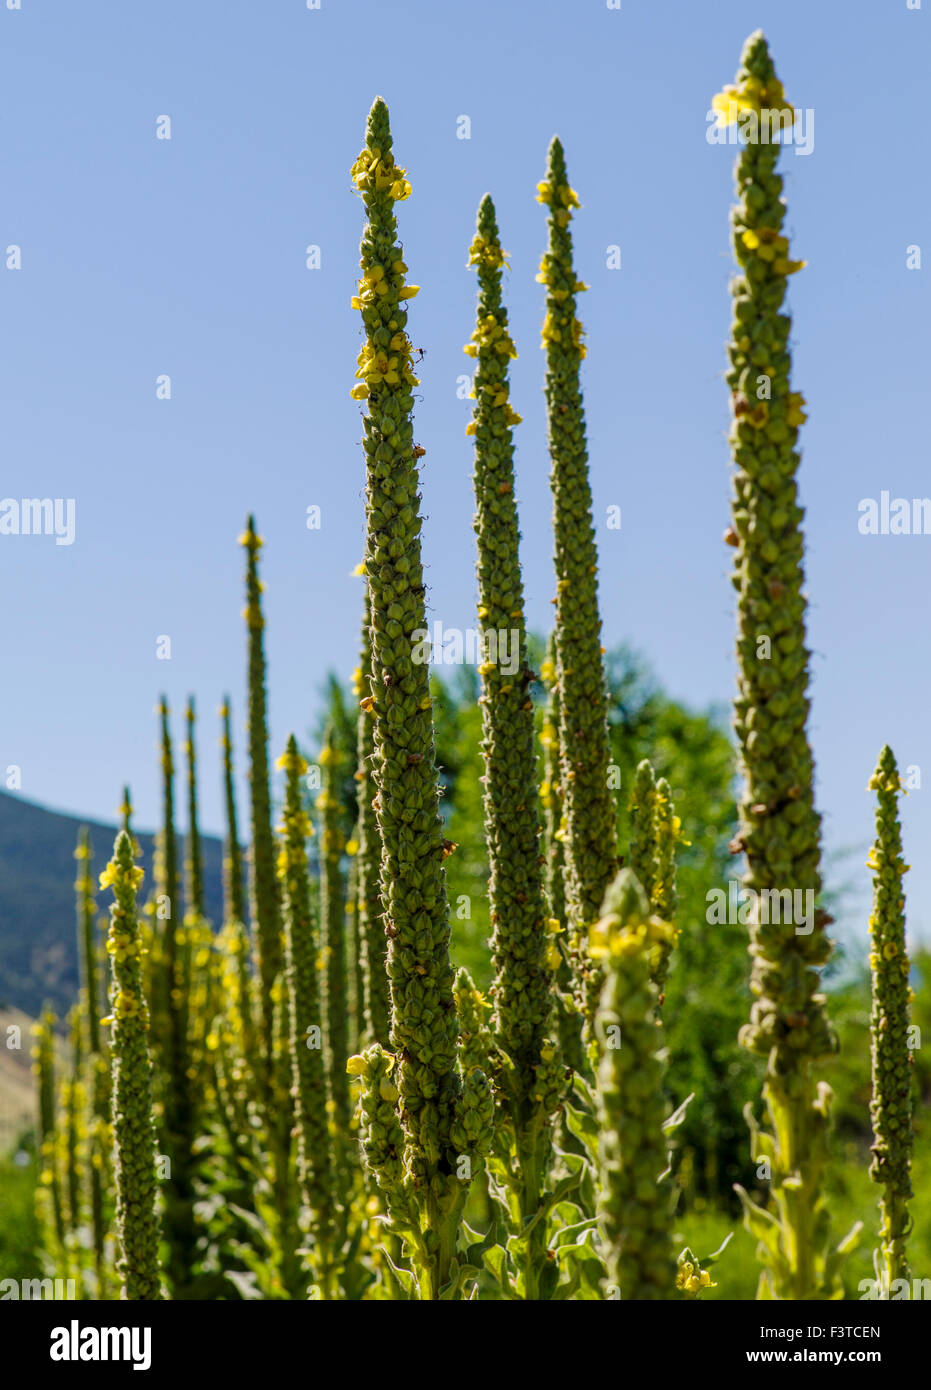 Molène commun ; velours ; plante Verbascum thapsus ; Scrophulariaceae Scrofulaire noueuse ; wildflower, centre du Colorado, USA Banque D'Images